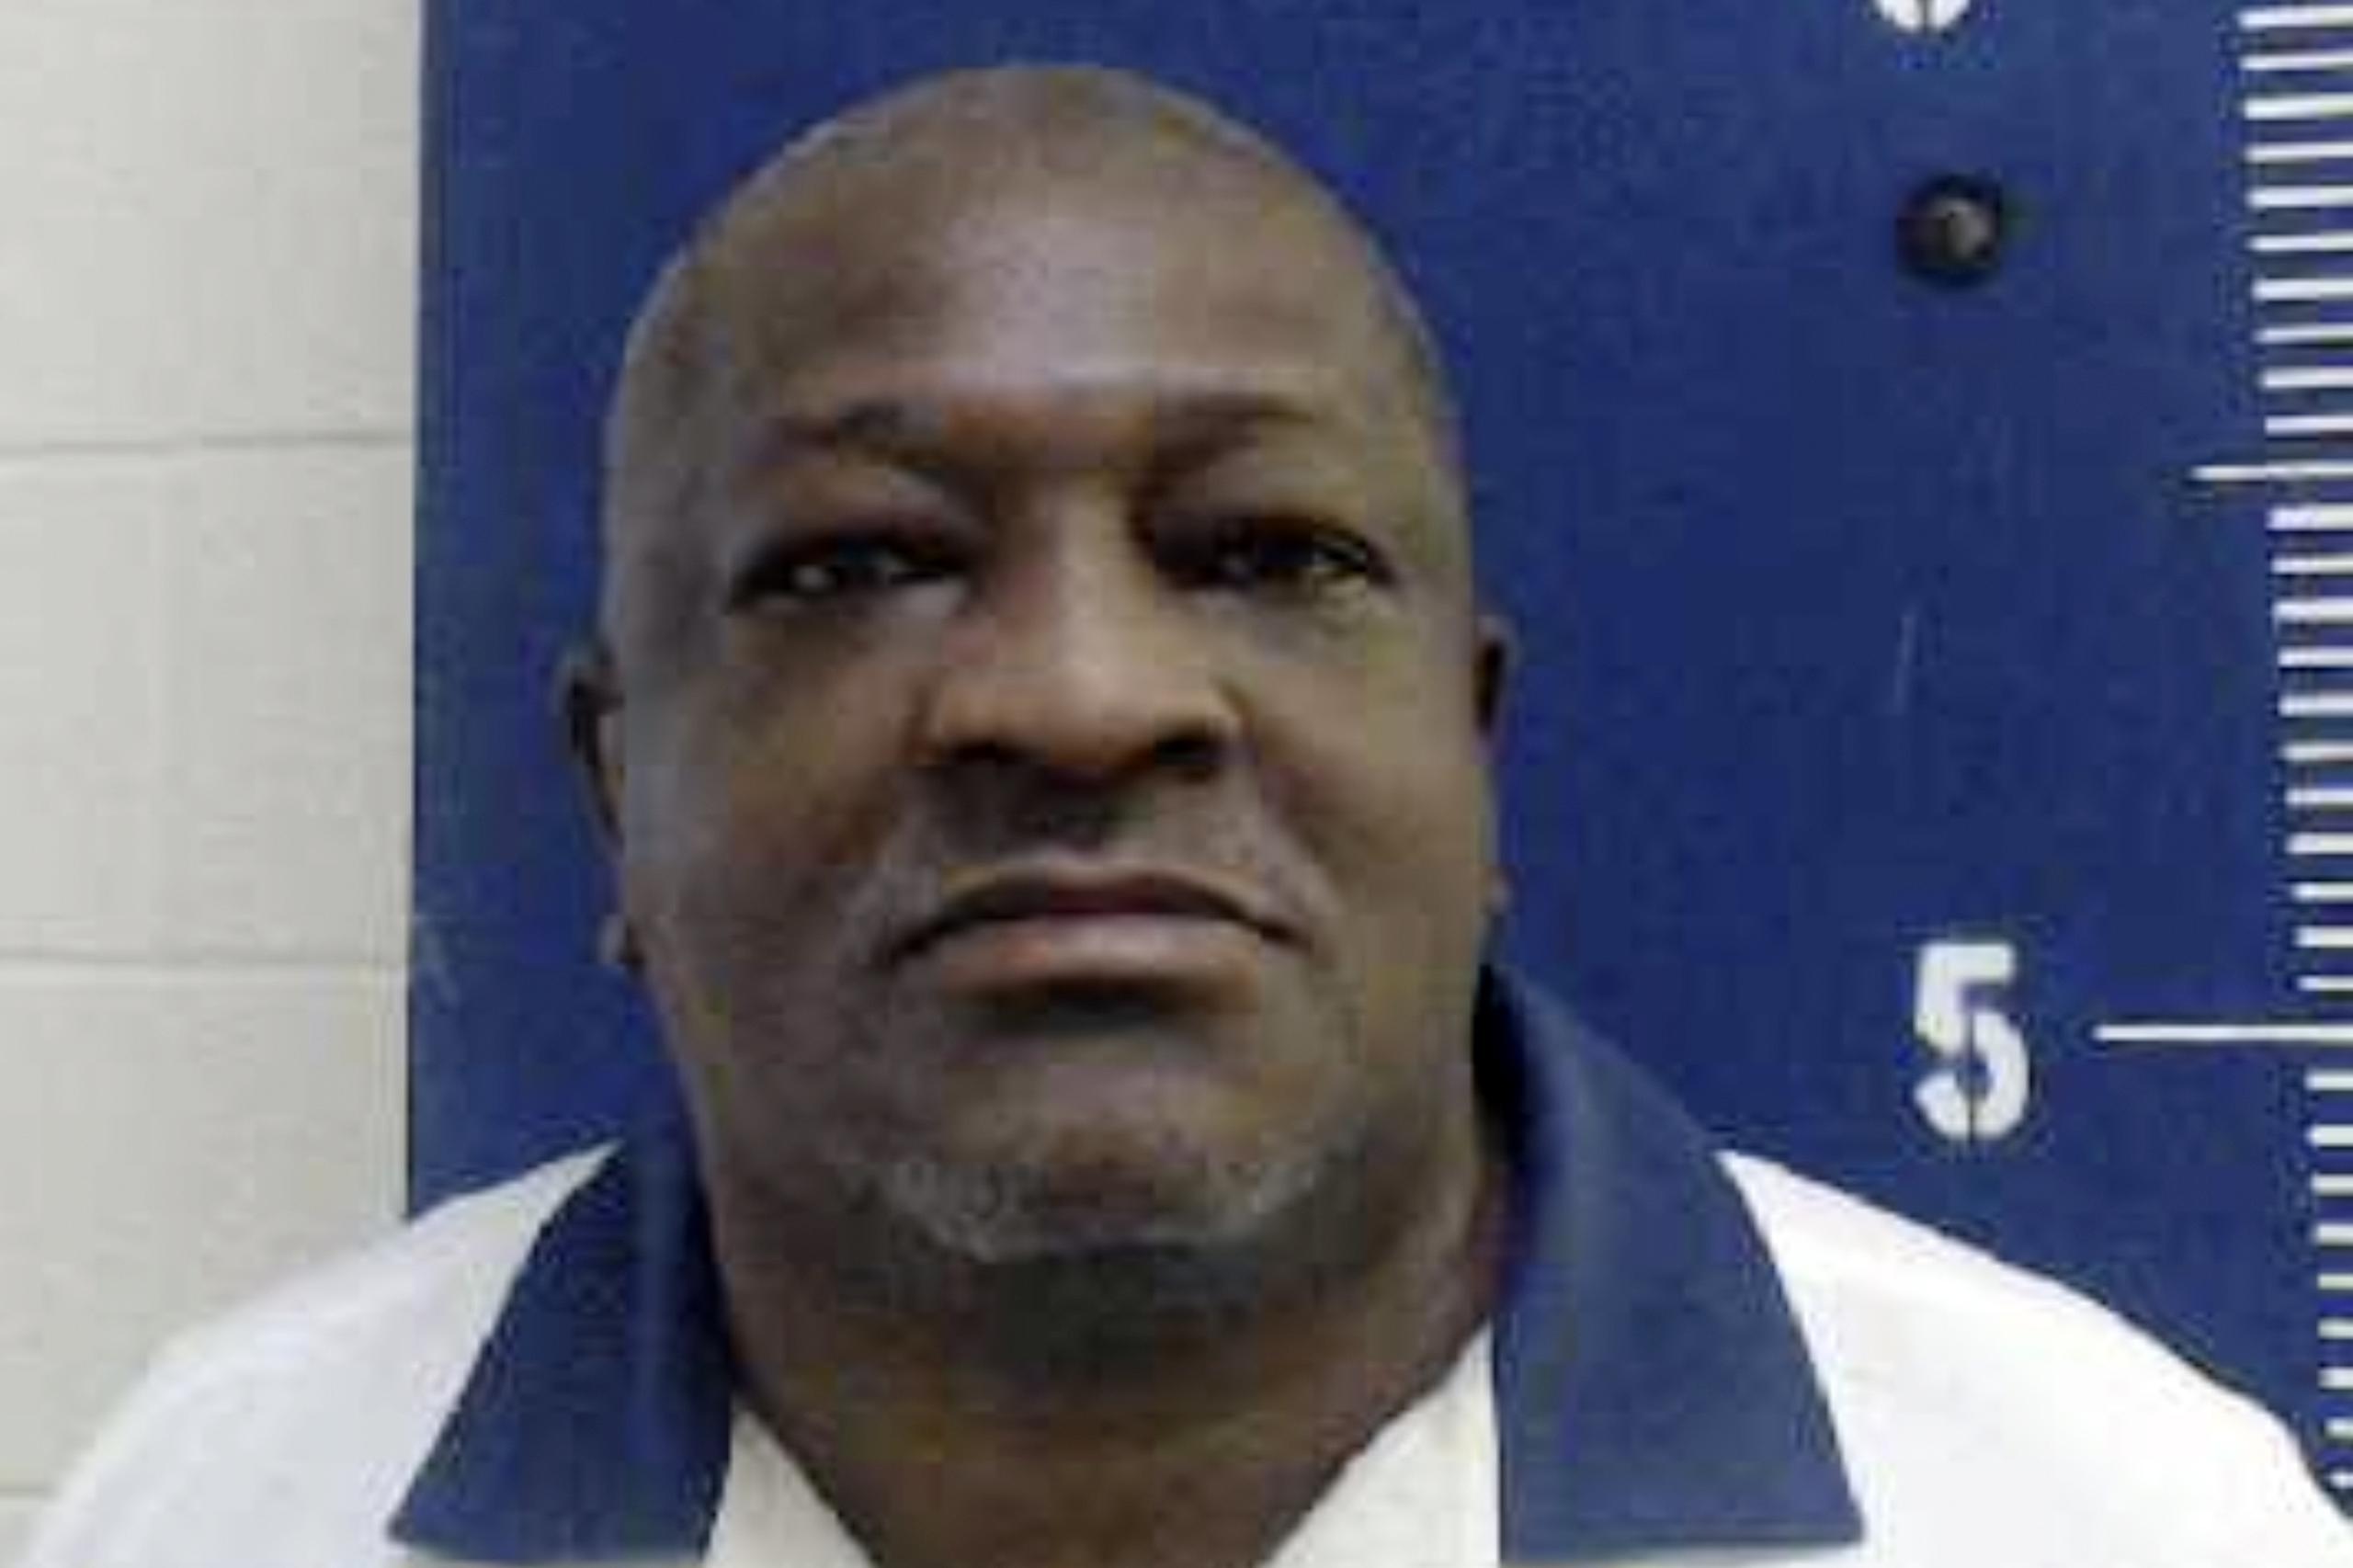 Willie James Pye, de 59 años, fue hallado culpable de asesinato y otros crímenes en noviembre de 1993, por la muerte de Alicia Lynn Yarbrough.